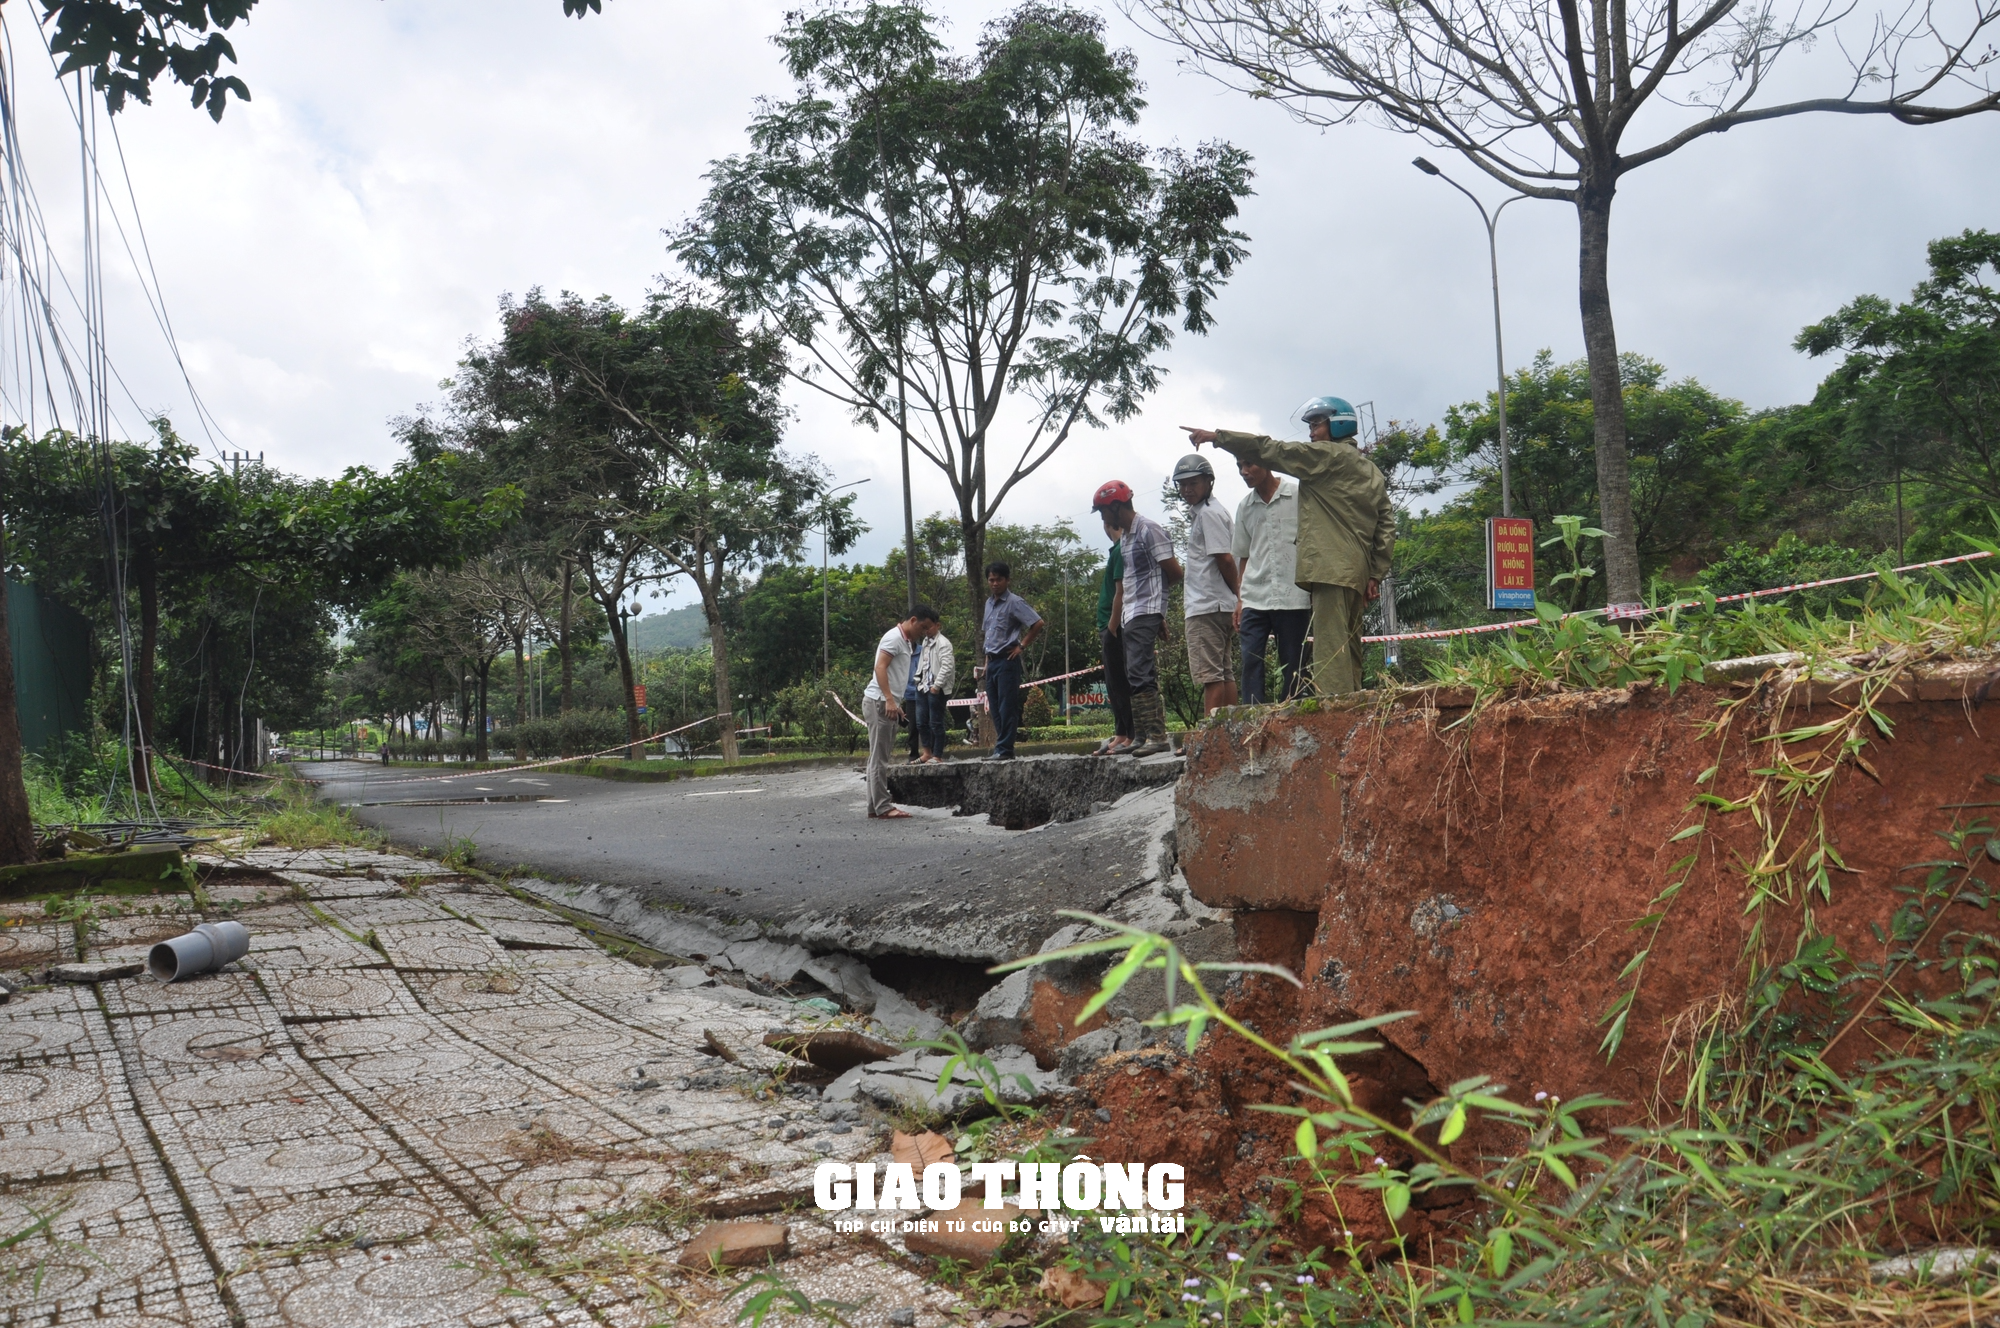 Cận cảnh sụt lún QL14 ở Đắk Nông: Vết sụt trượt liên tục mở rộng, nguy cơ mất đường - Ảnh 1.